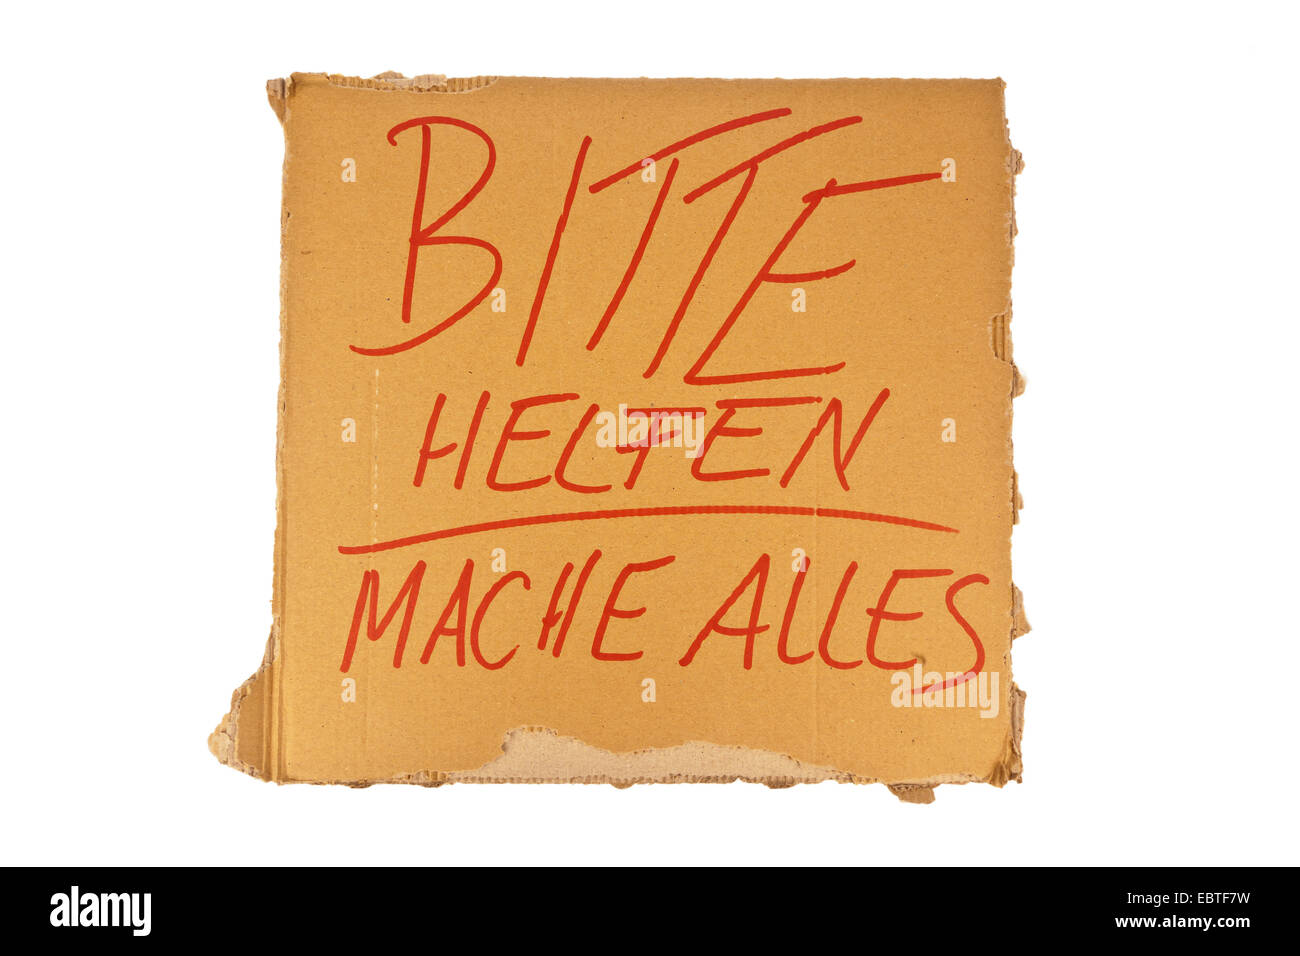 Signe d'un travail en carton-recherche de personne sans-abri avec l'inscription 'Bitte helfen - mache alles" ("s'il vous plaît aider - je n'importe quoi") Banque D'Images